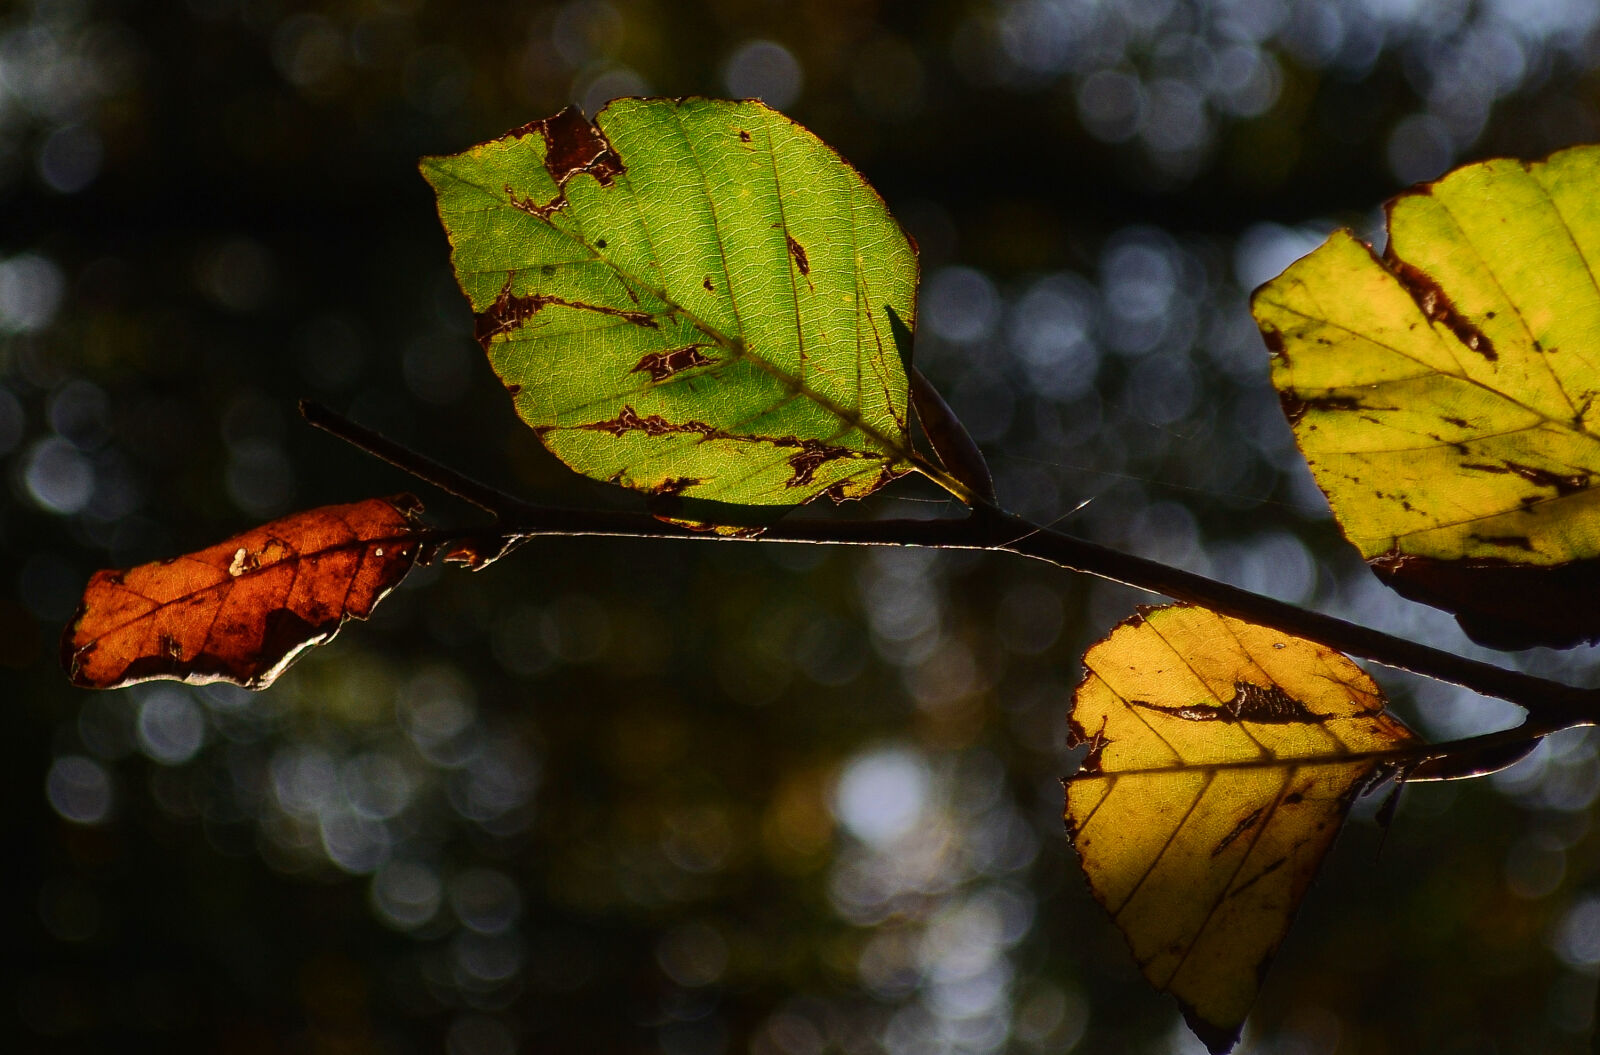 Nikon D7000 + Nikon AF-S DX Nikkor 18-55mm F3.5-5.6G VR sample photo. Leaf, leaves, autumn, beech photography